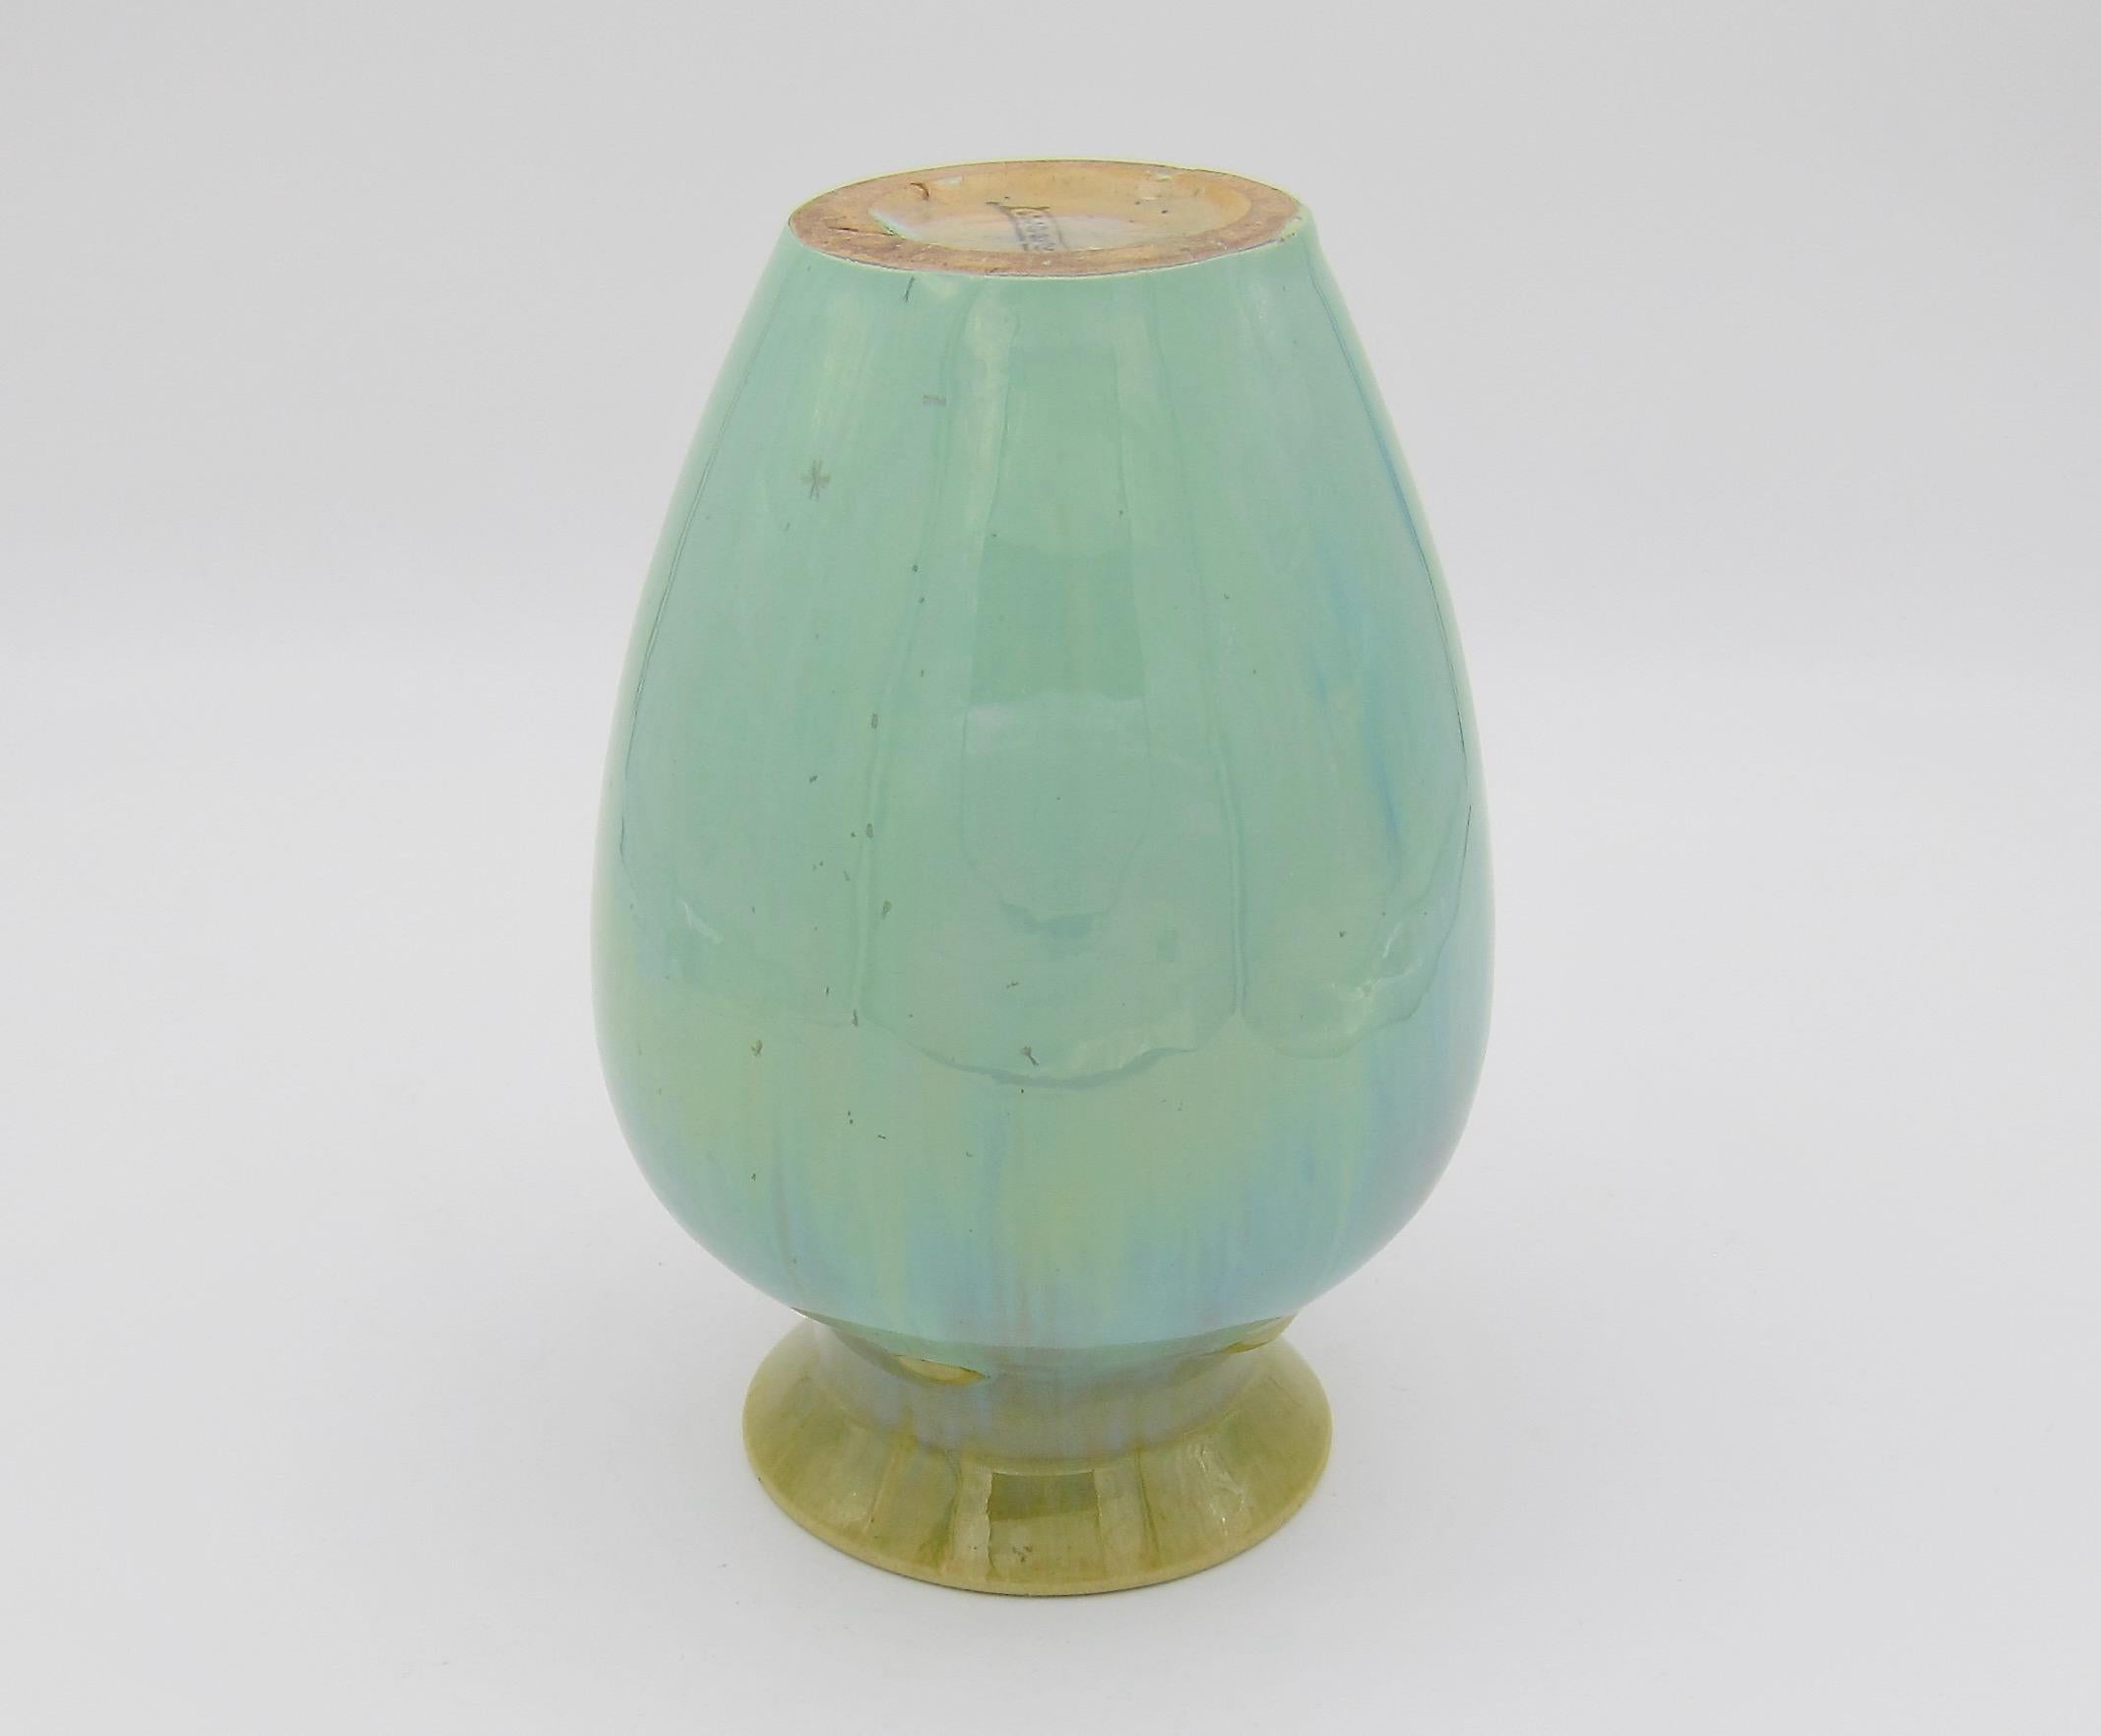 Vintage Fulper Pottery Vase with a Flambé Glaze 5